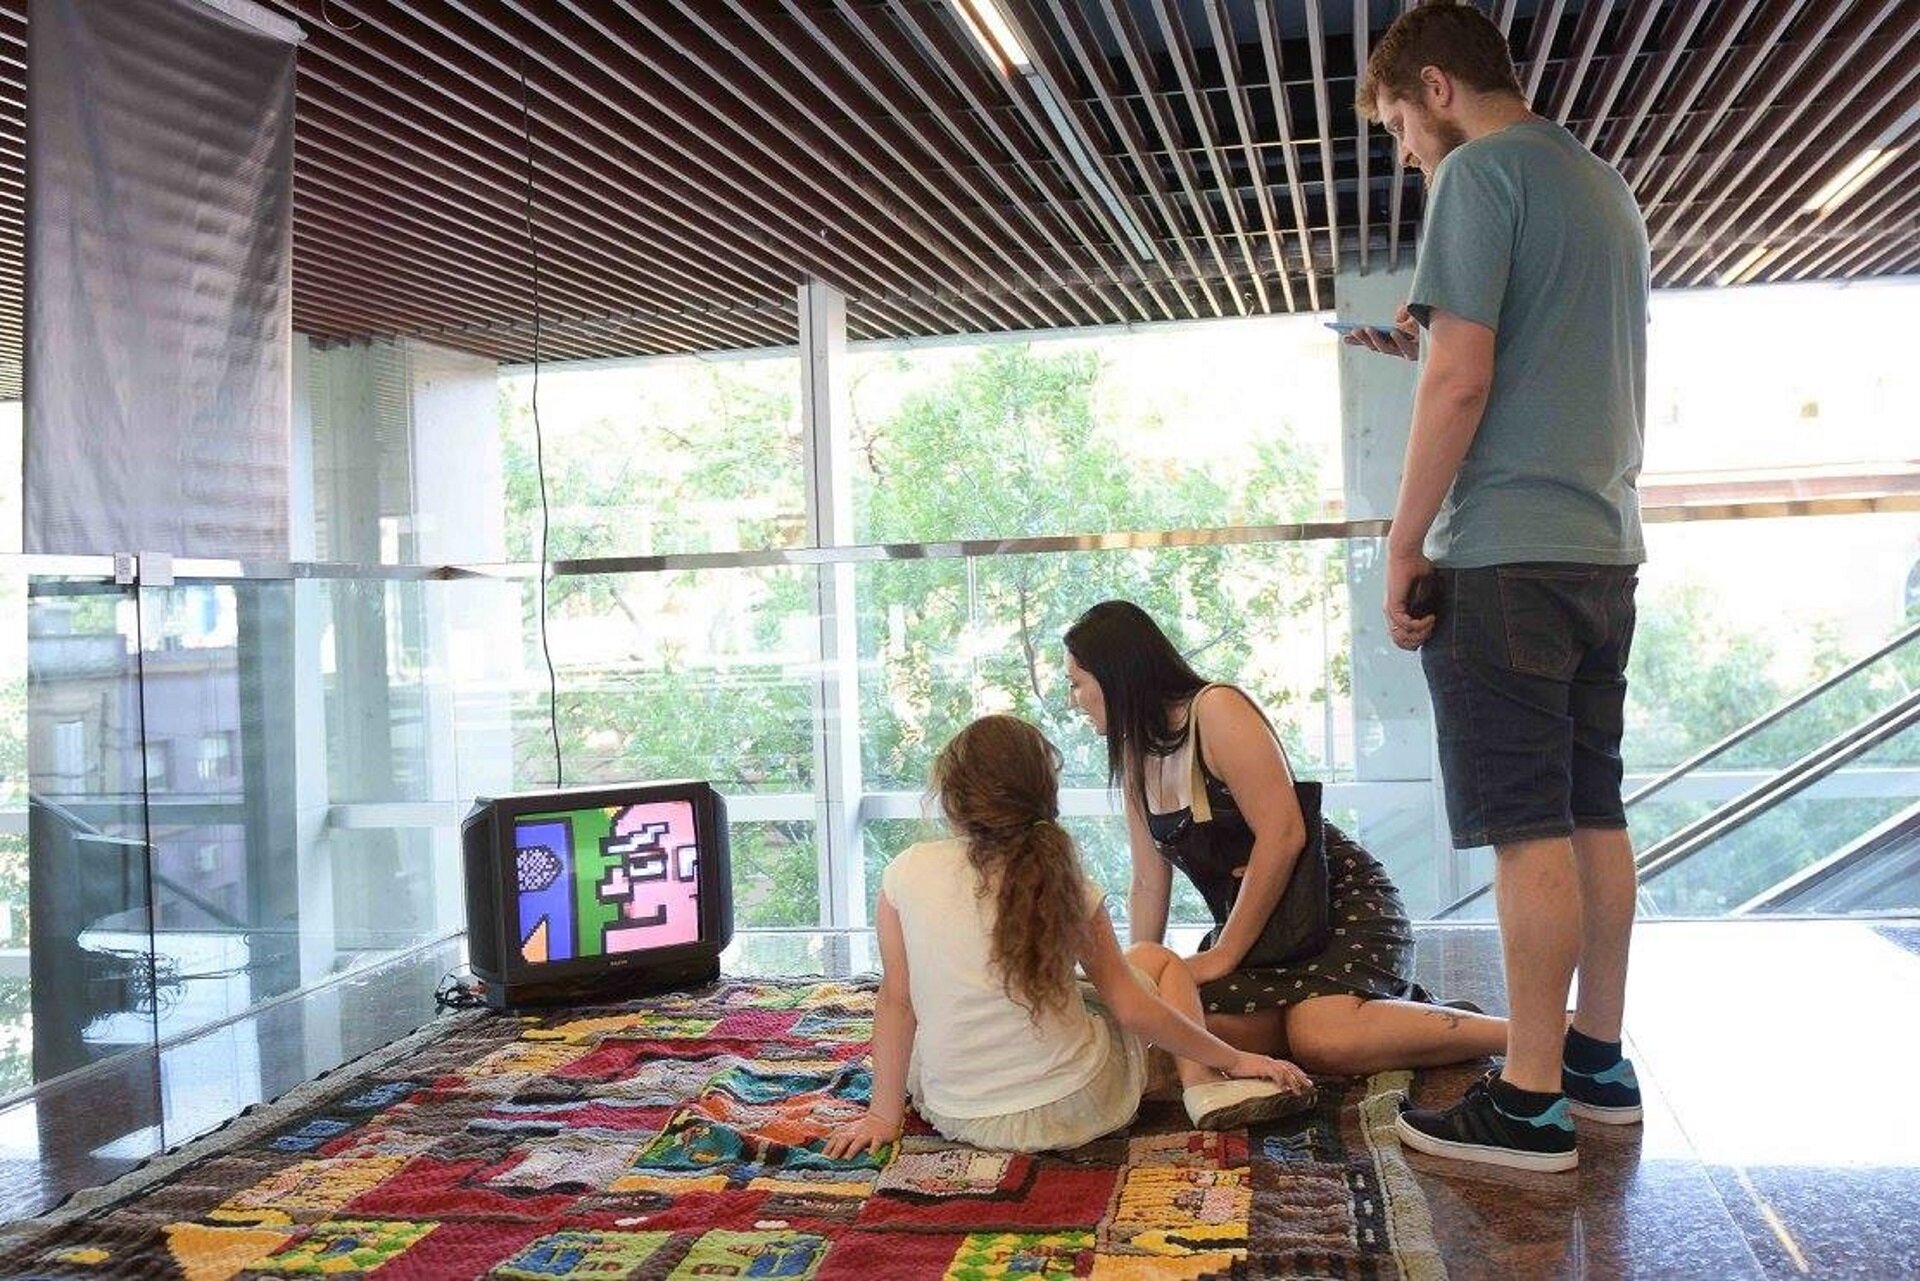 Ilustracja przedstawia instalację Tomasza Wlaźlaka pt. „Tkanka”. Składa się ona z dwóch części: animacji komputerowej, wykonanej w 8-bitowej stylistyce wyświetlanej na niewielkim monitorze oraz ręcznie wykonanego dywanu, na którym monitor został umieszczony.